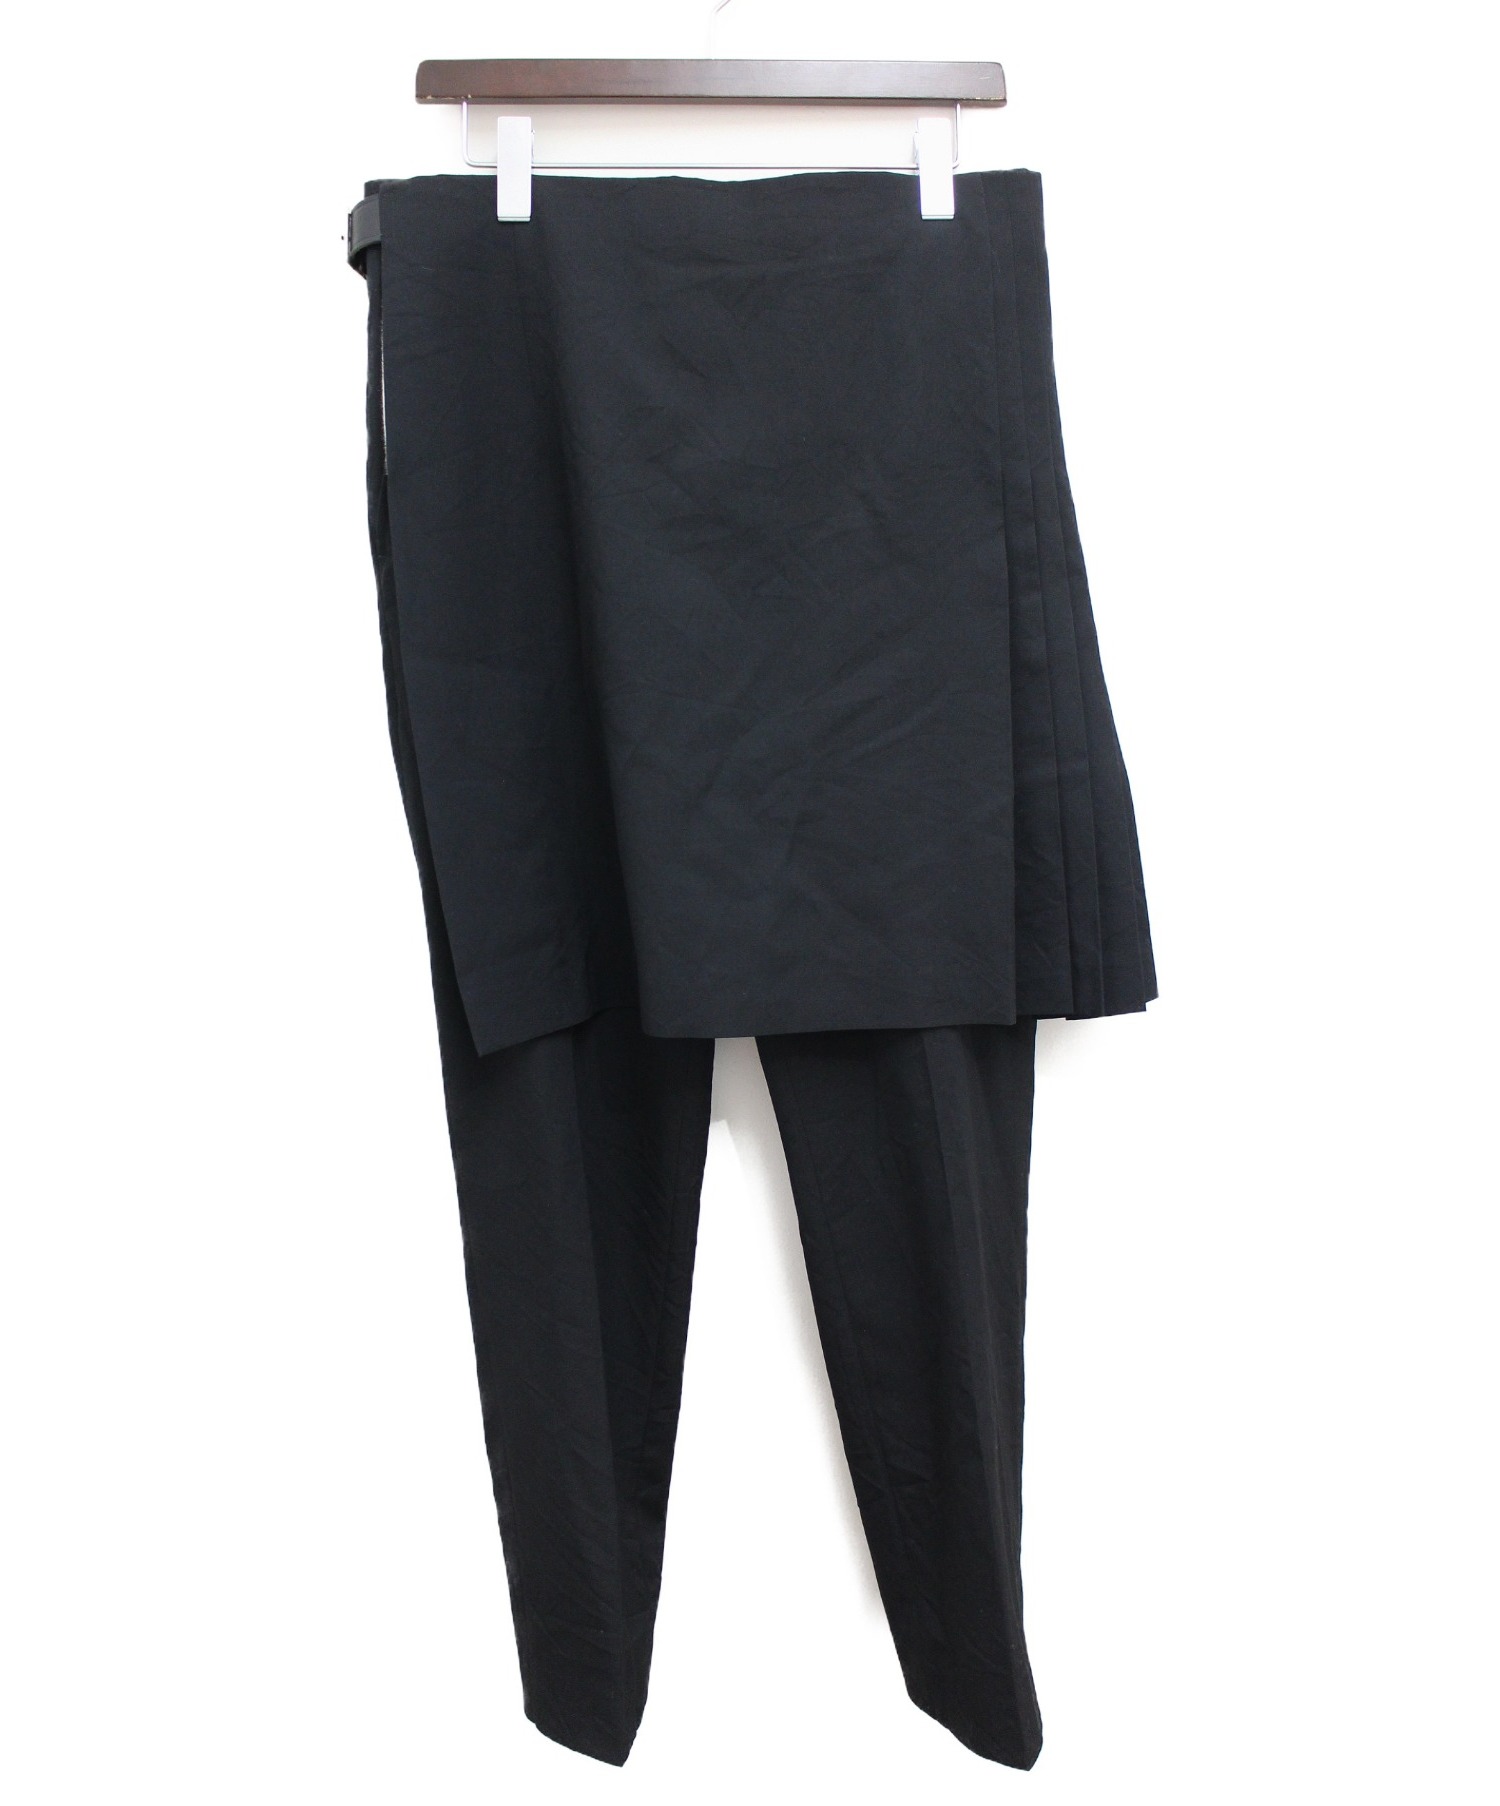 COMMEDESGARCONS HOMMEPLUS 2014 スカートパンツ - パンツ